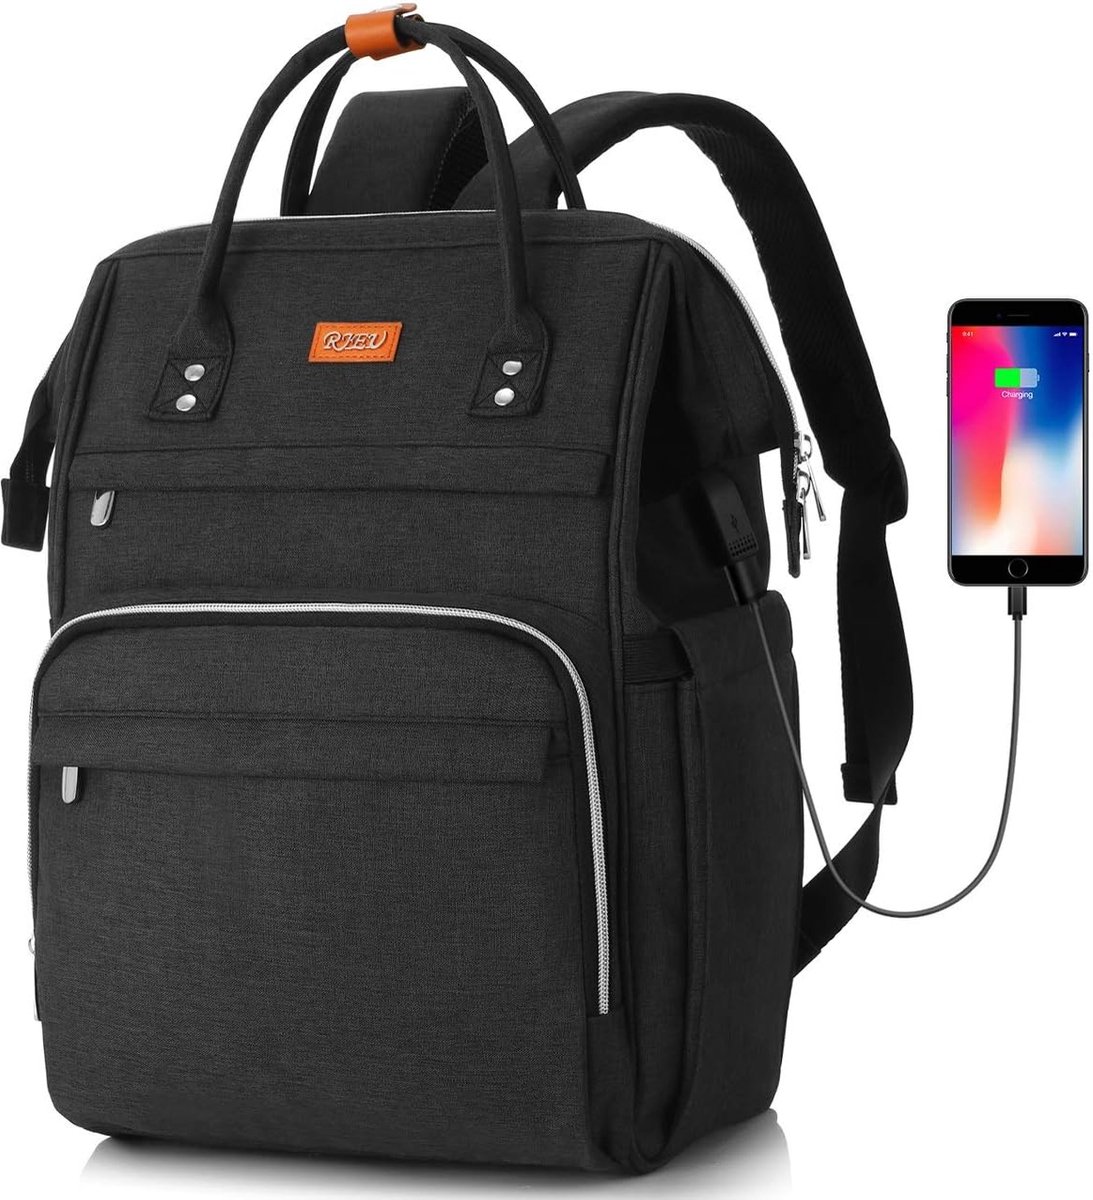 Rugzak met USB-poort - Zwart - 17.3 inch laptoptas - Voor school, werk, reizen - Rugtas met veel opbergruimte